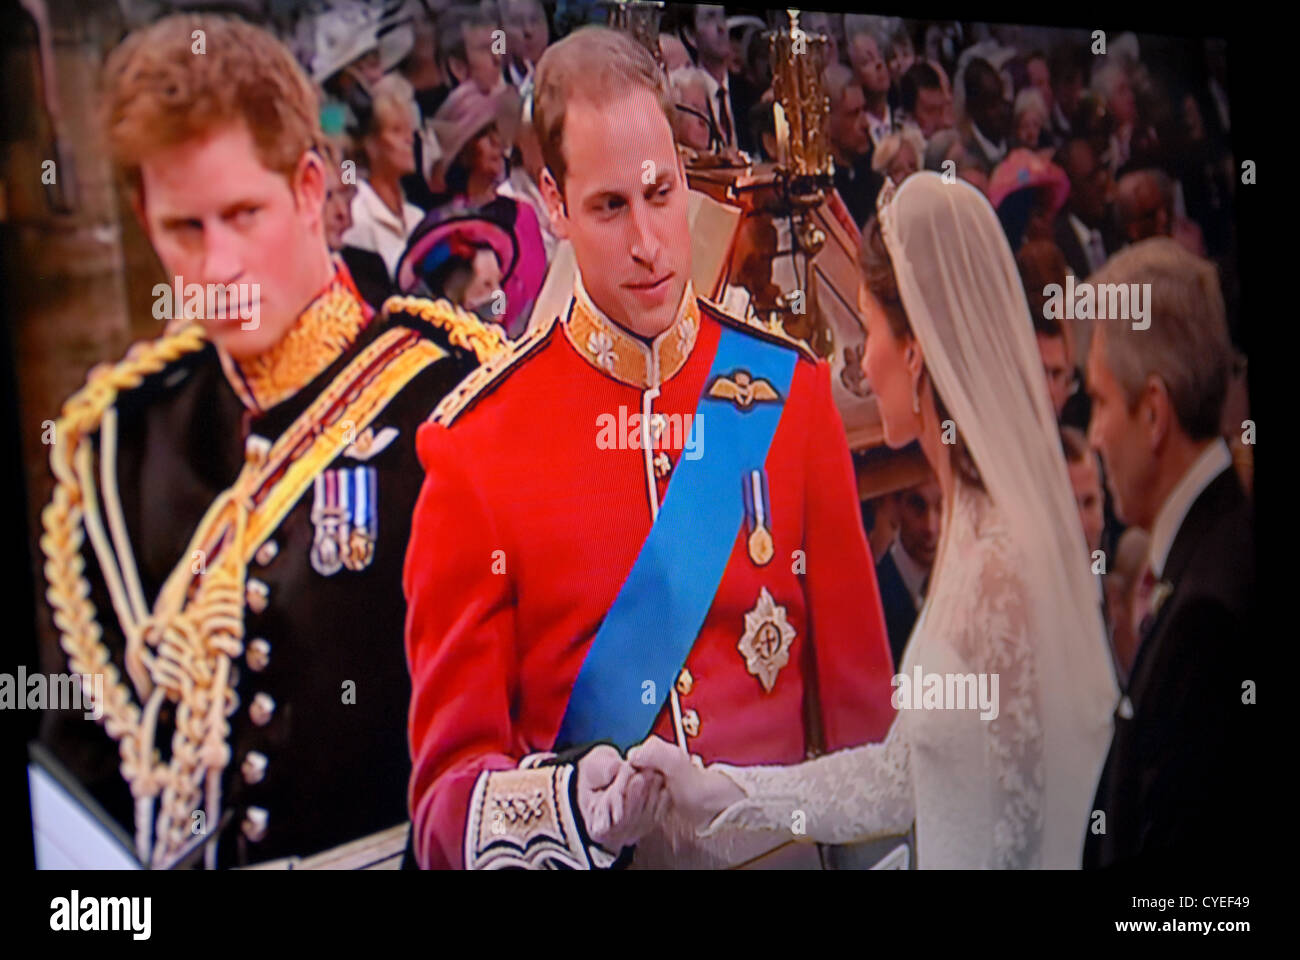 Königliche Hochzeit von Prinz William und Catherine Middleton, Herzog und die Herzogin von Cambridge. Freitag, 29. April 2011. TV / neu zu erfassen. Stockfoto